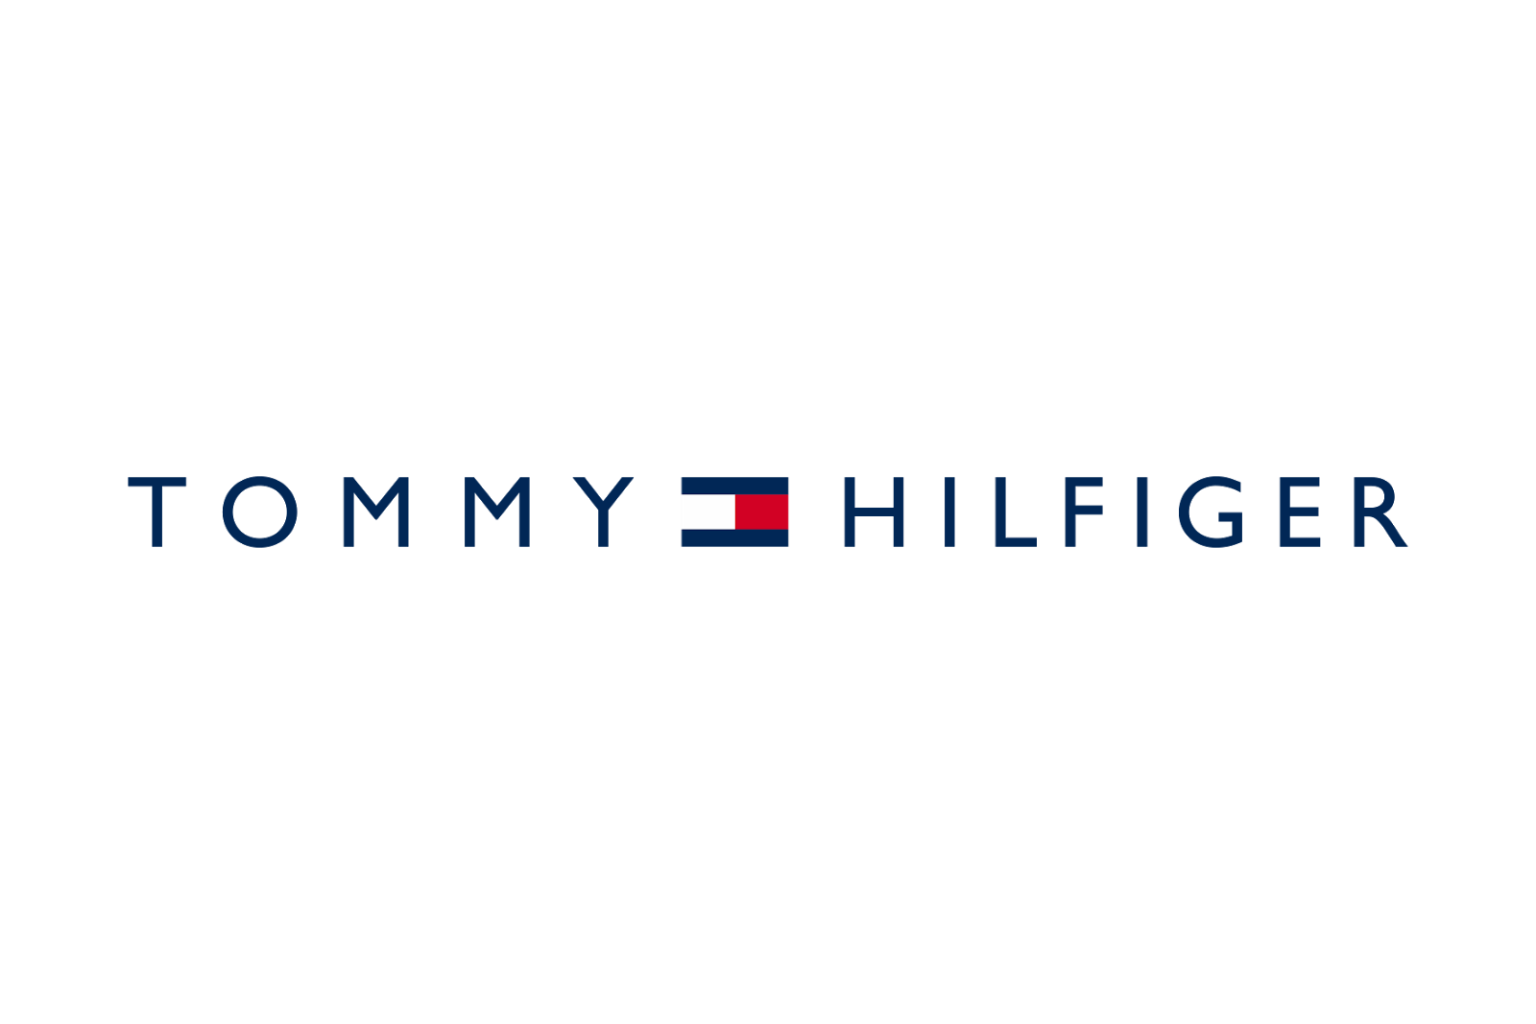 Tommy hilfiger logo - Download Free Png Images